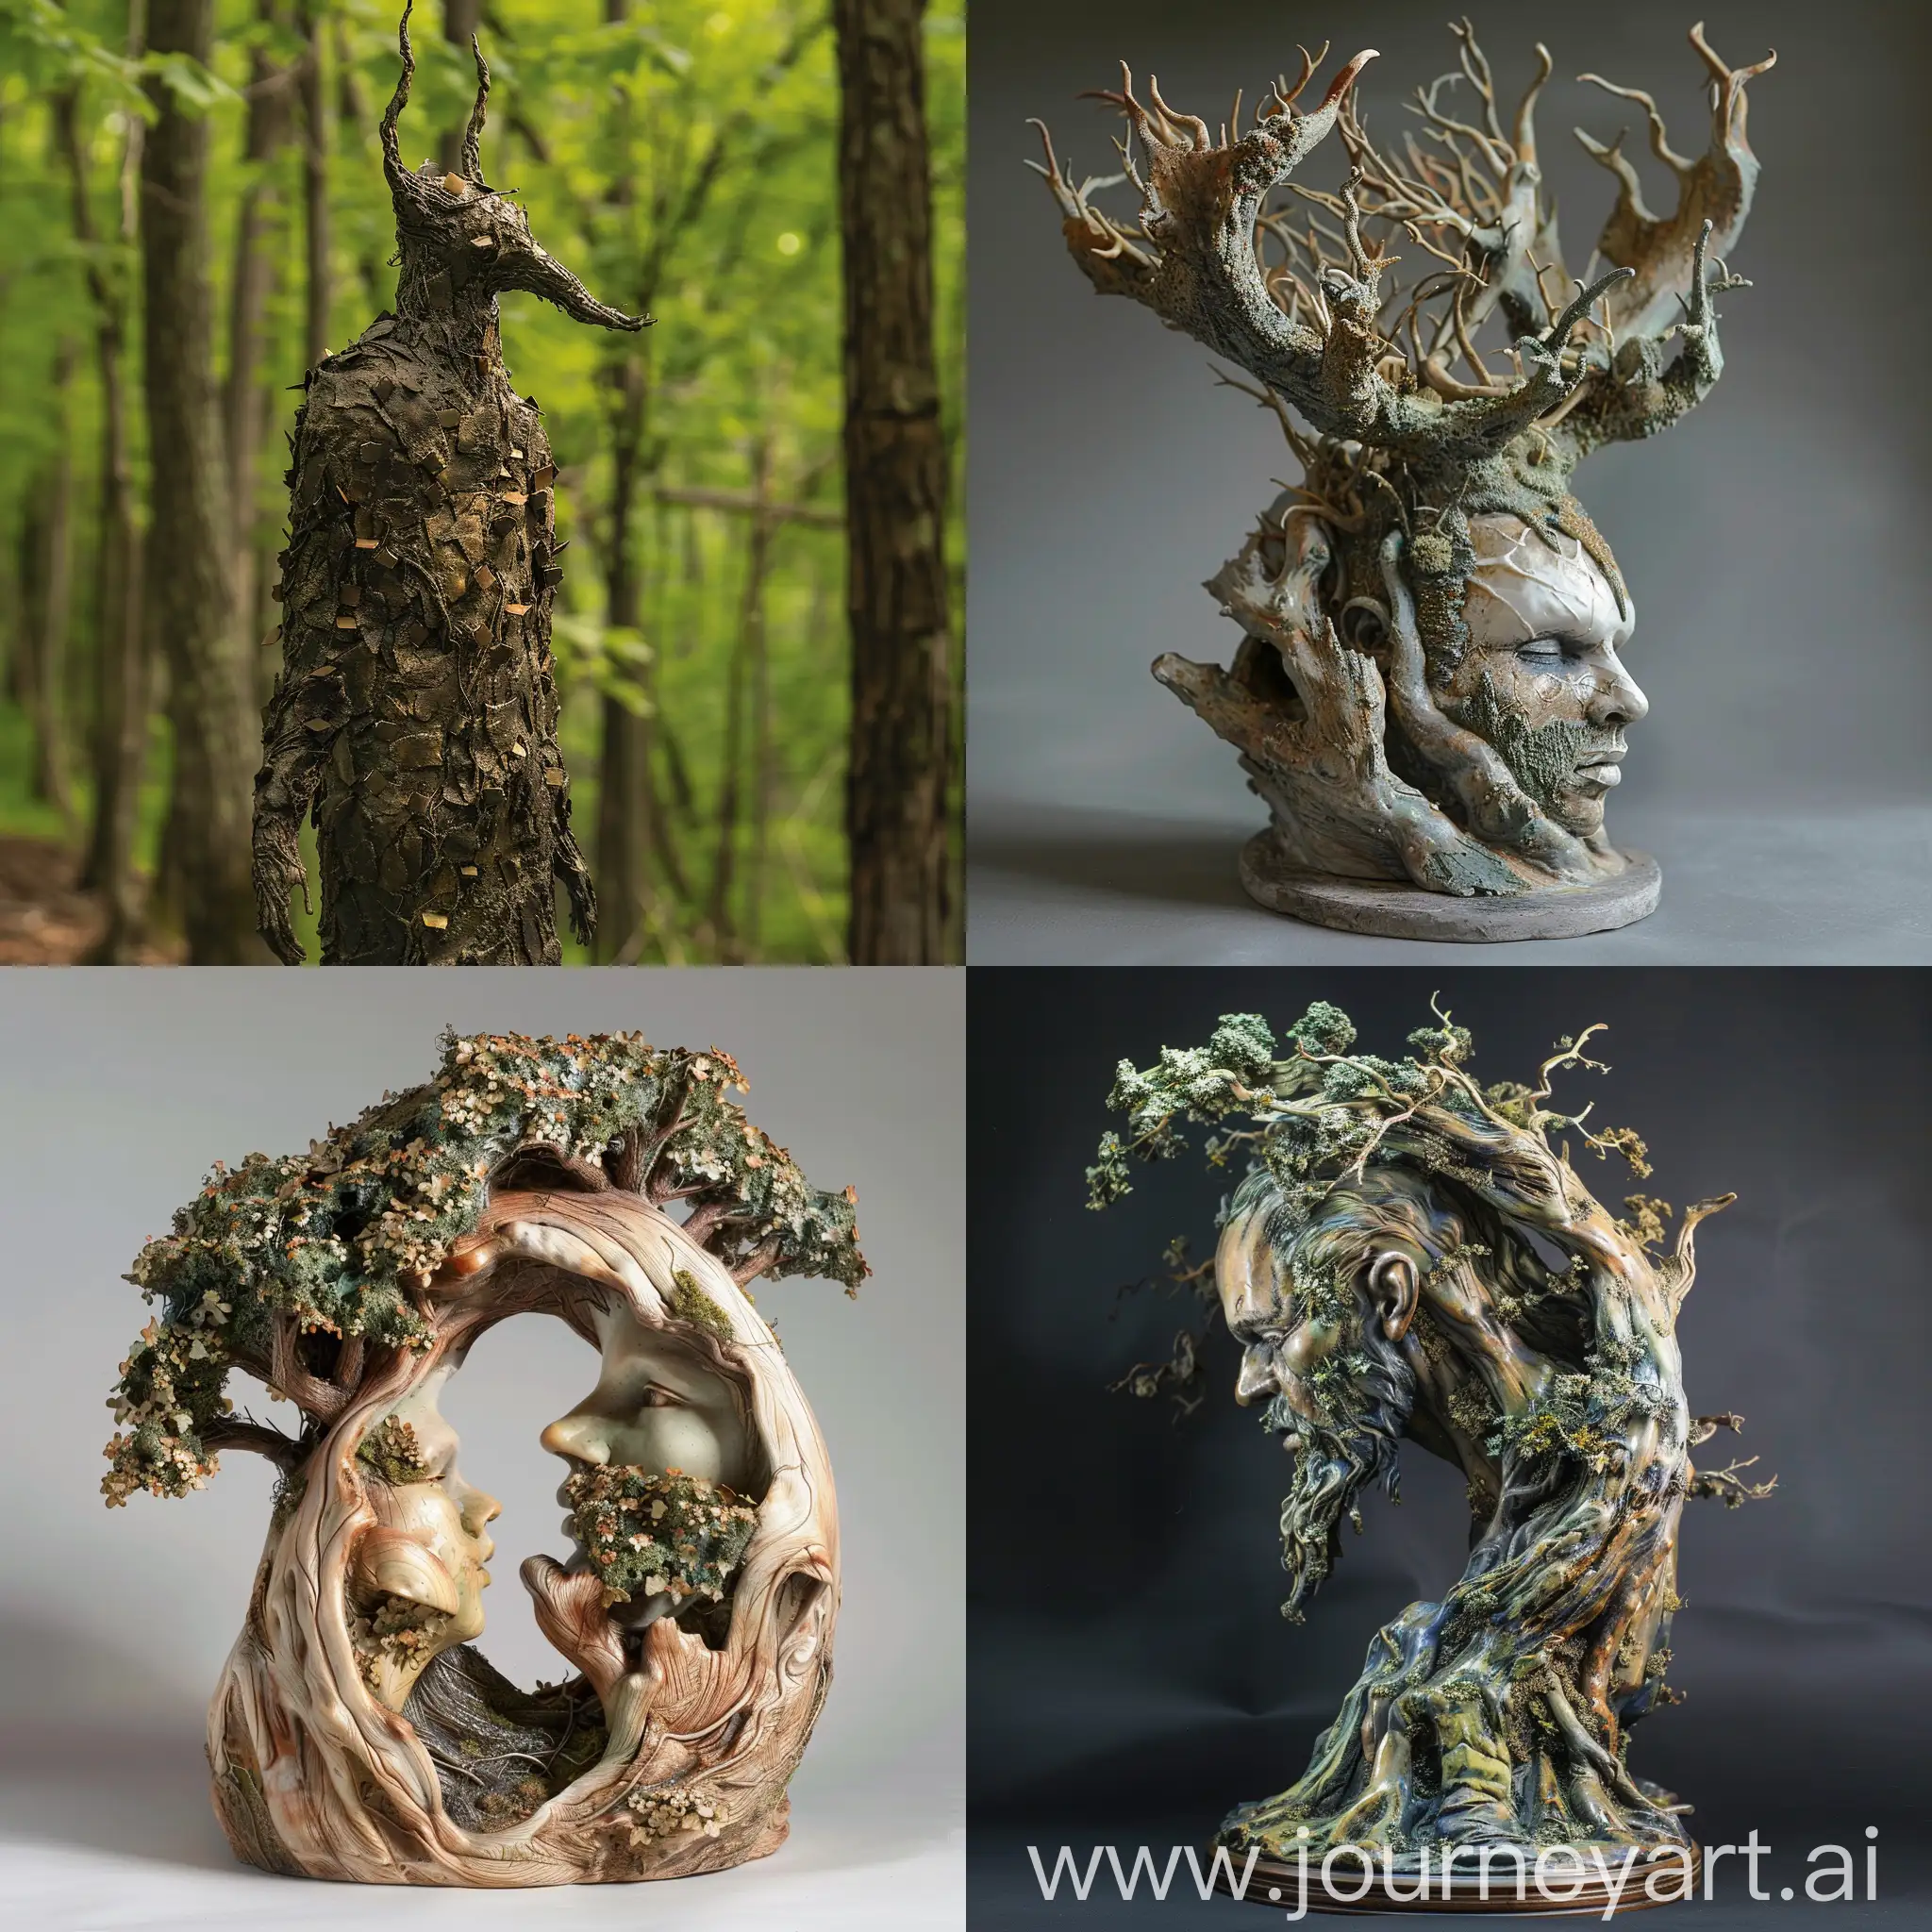 Escultura relscionada con el bosque y la naturaleza